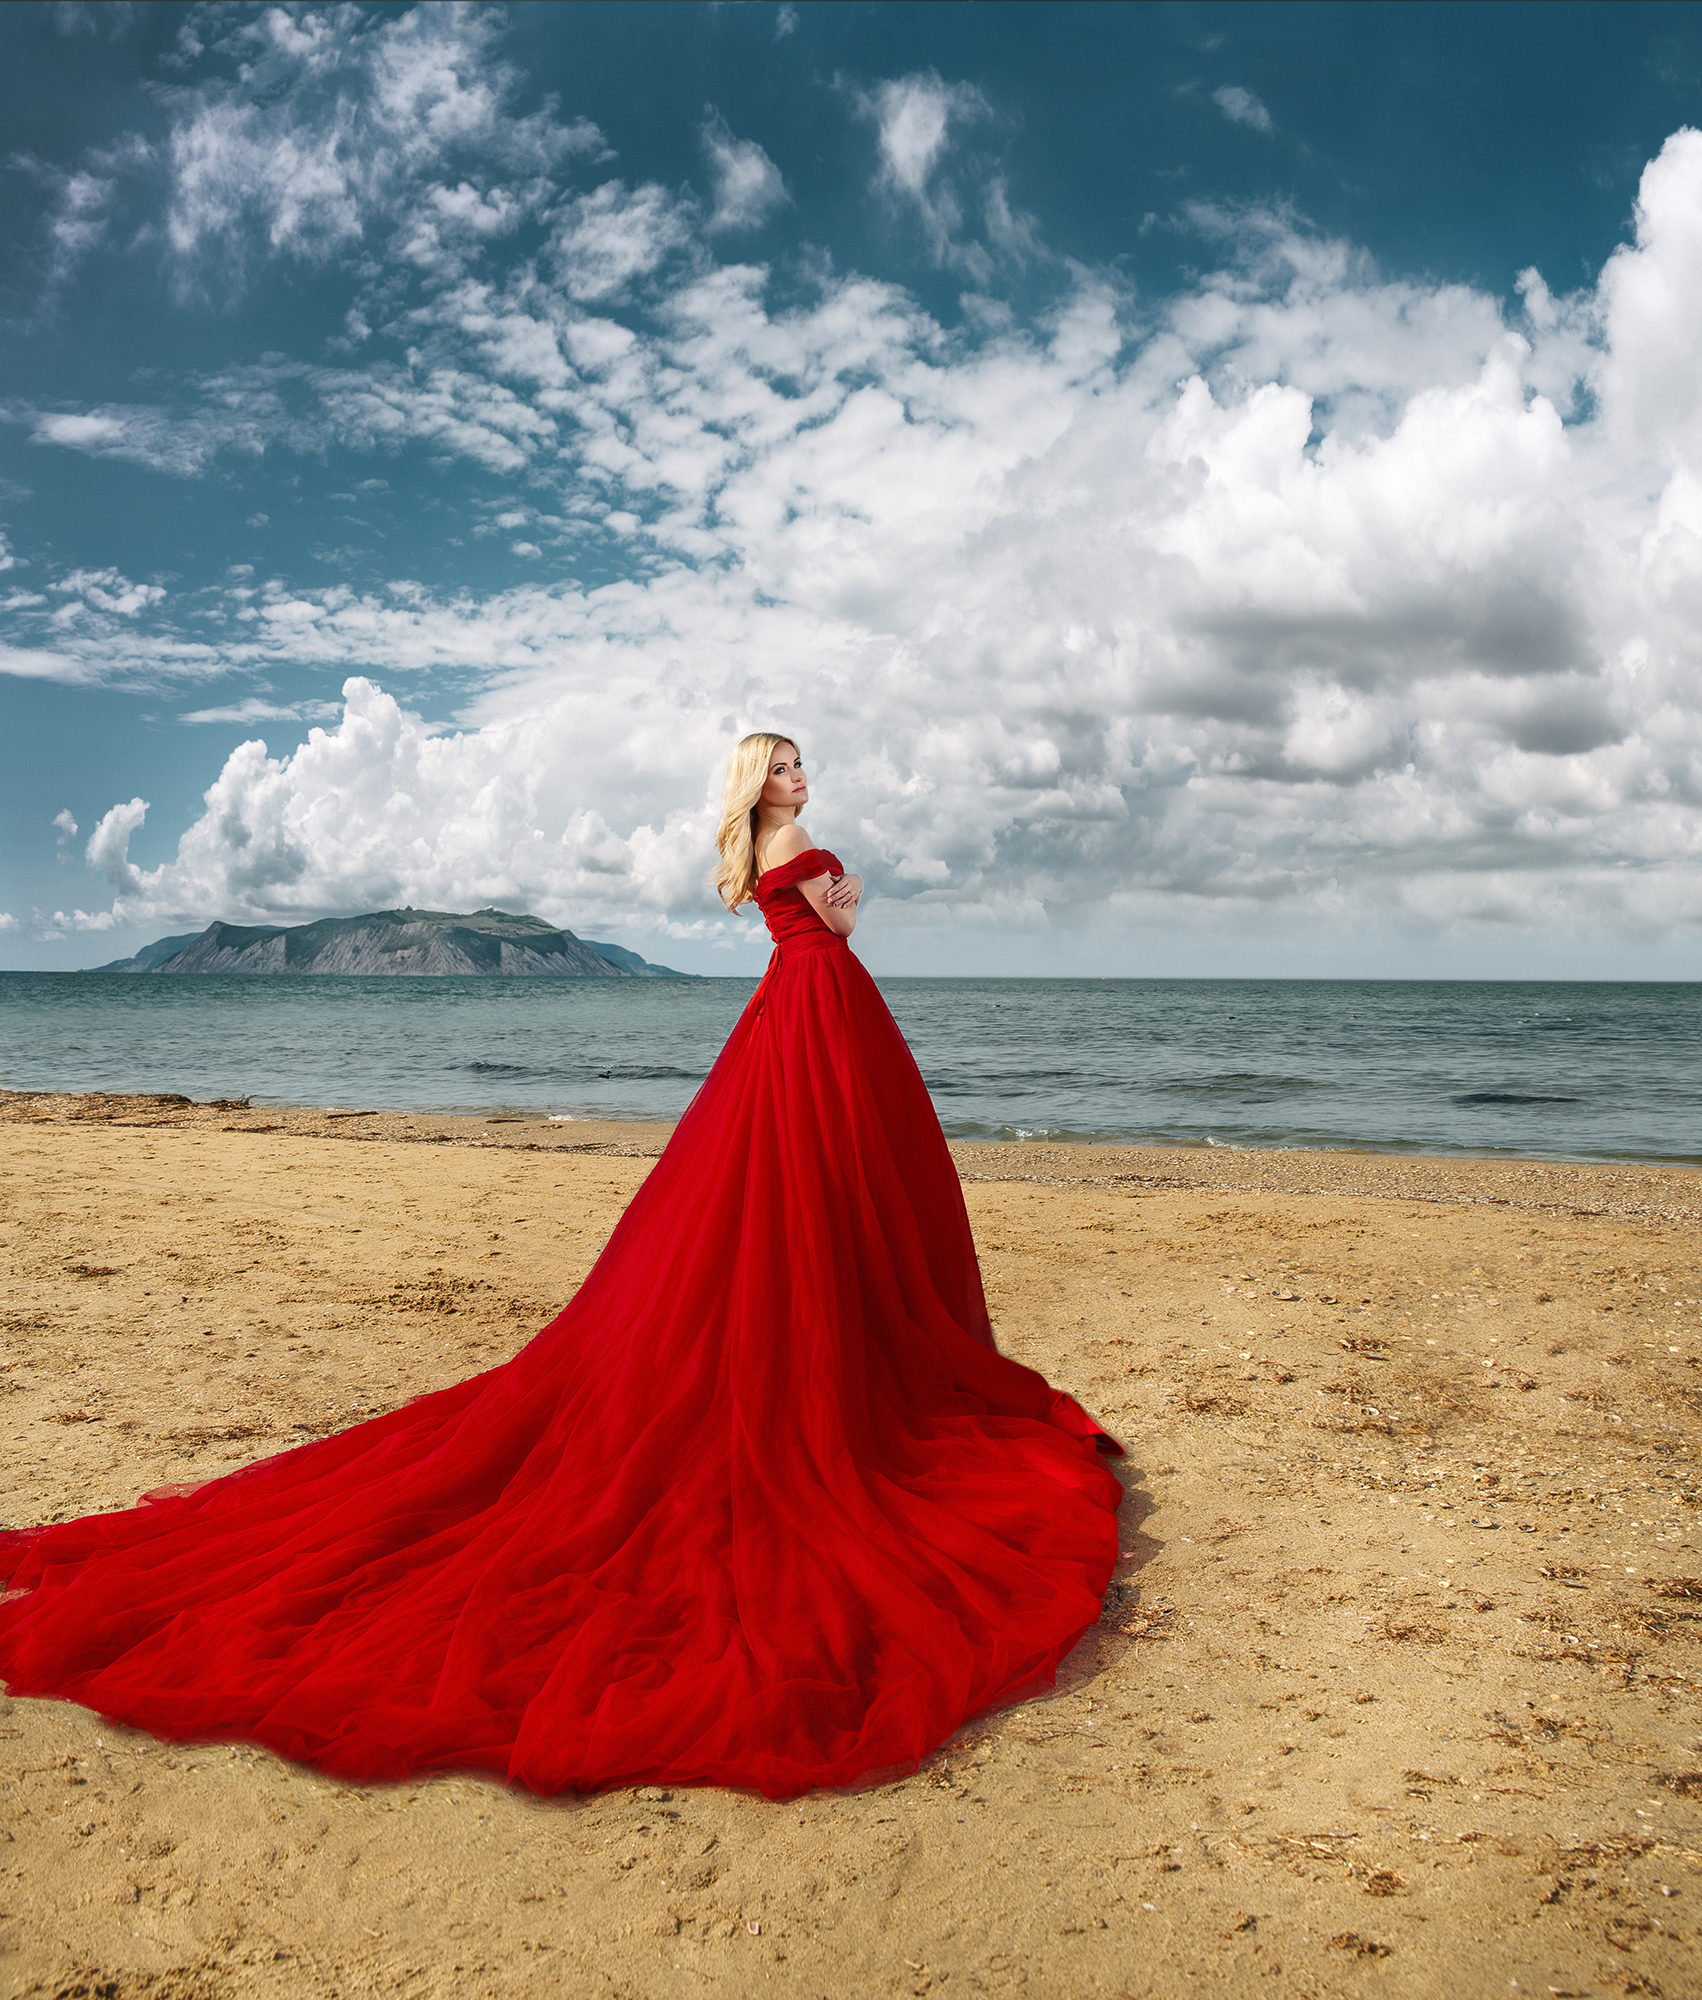 Фото Девушка в красном платье стоит на фоне природы, фотограф Хисматулин Ренат